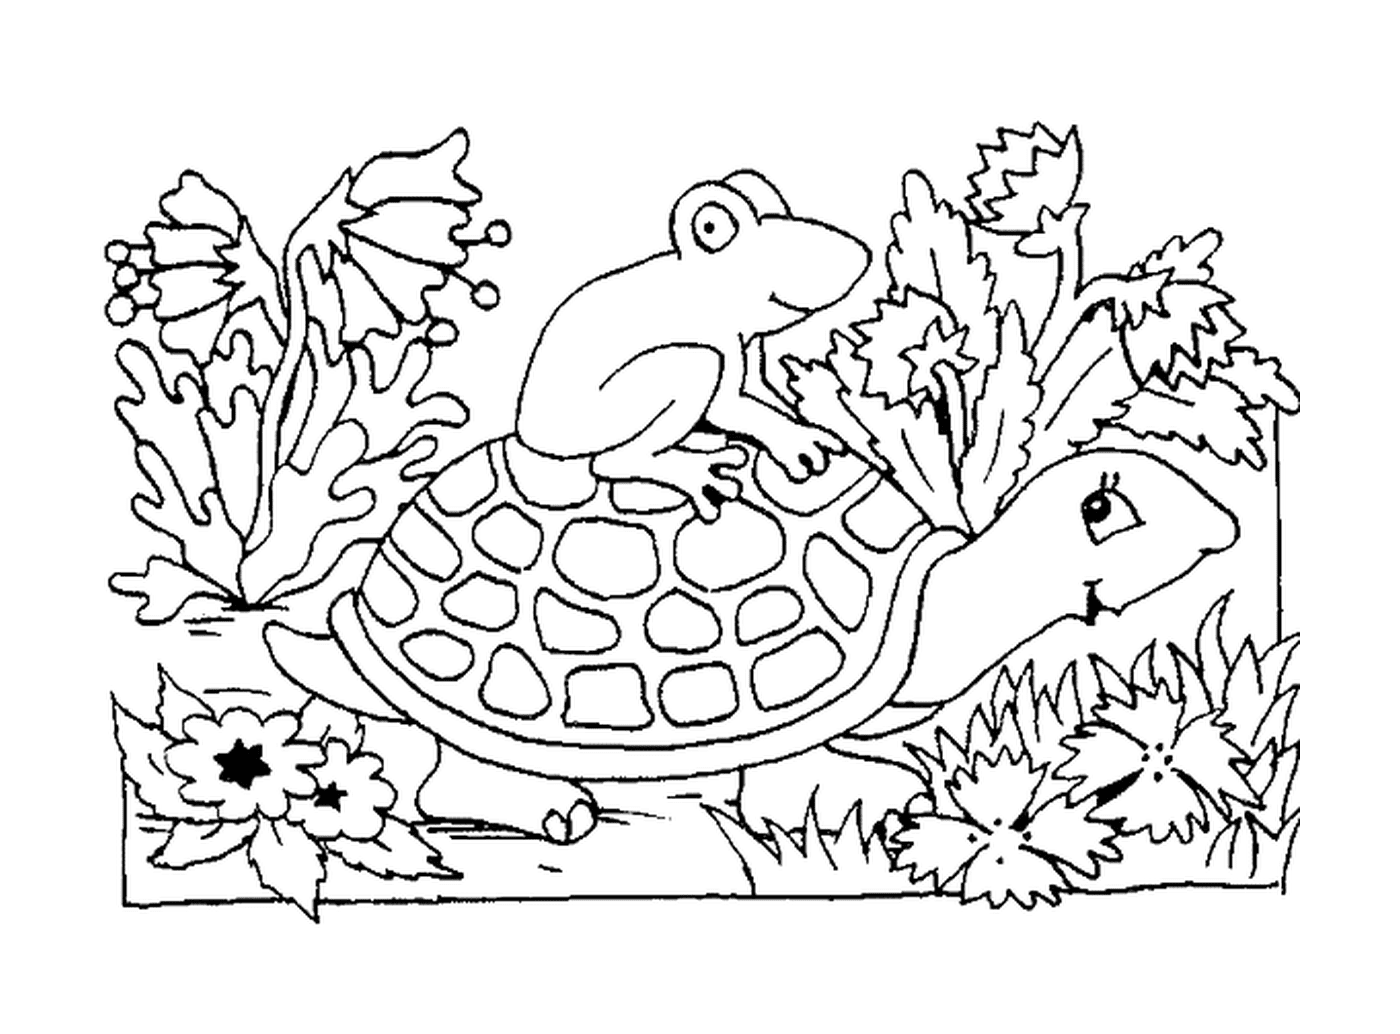  Лягушка, сидящая на раковине черепахи 